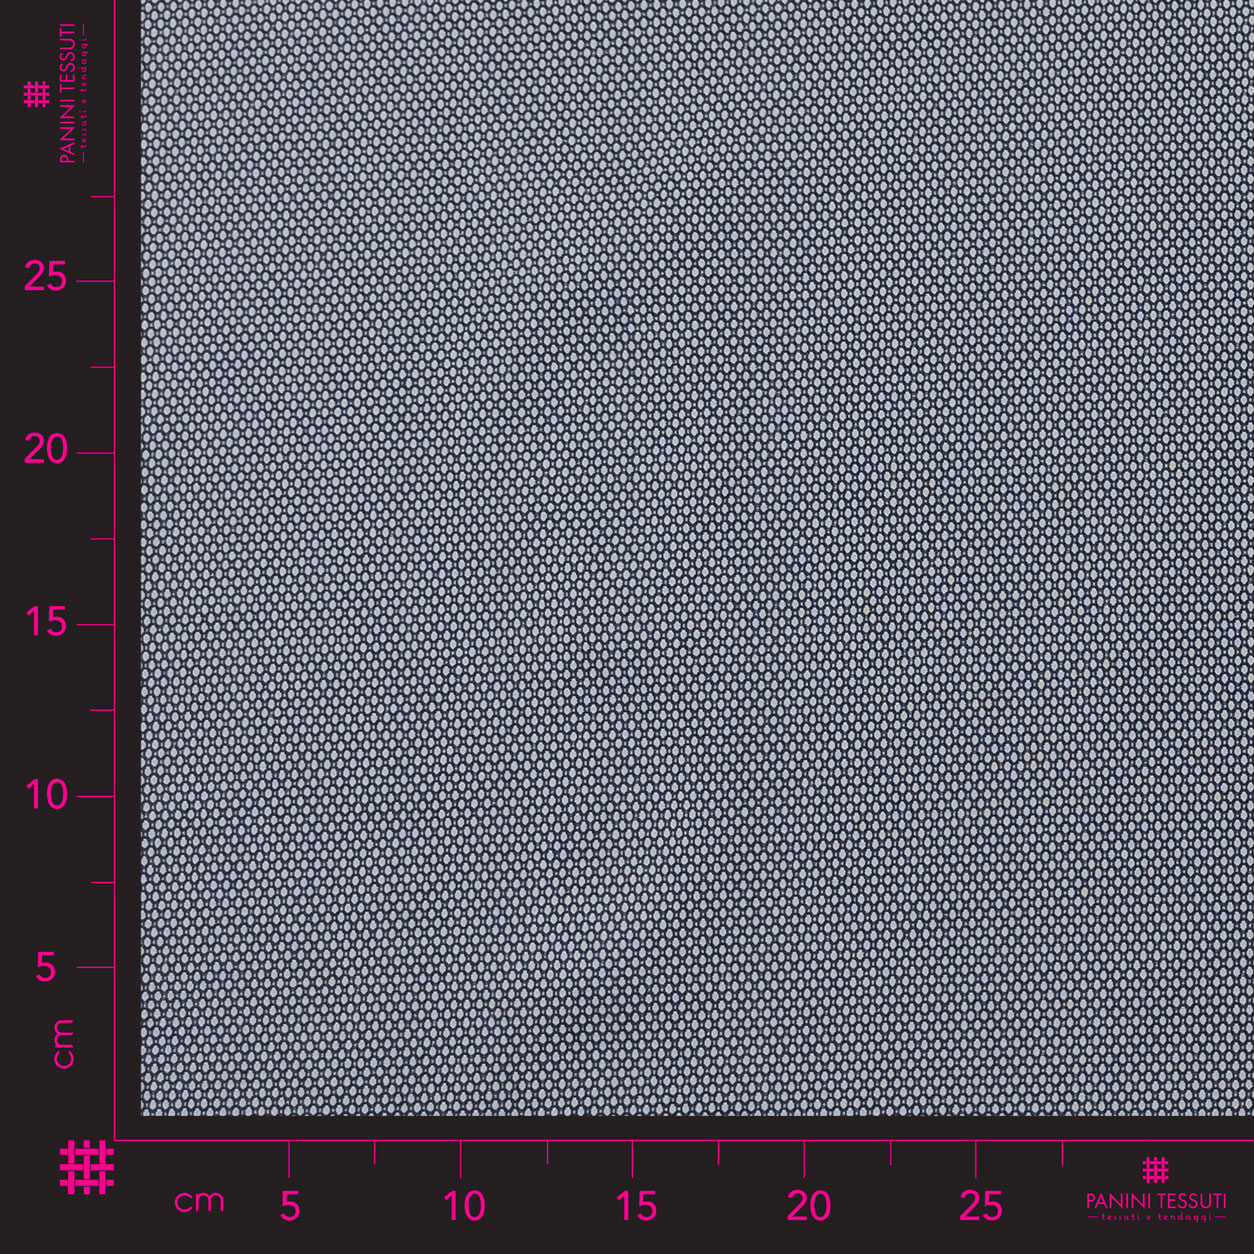 tessuto-abbigliamento-microfantasia-grigio-e-blu